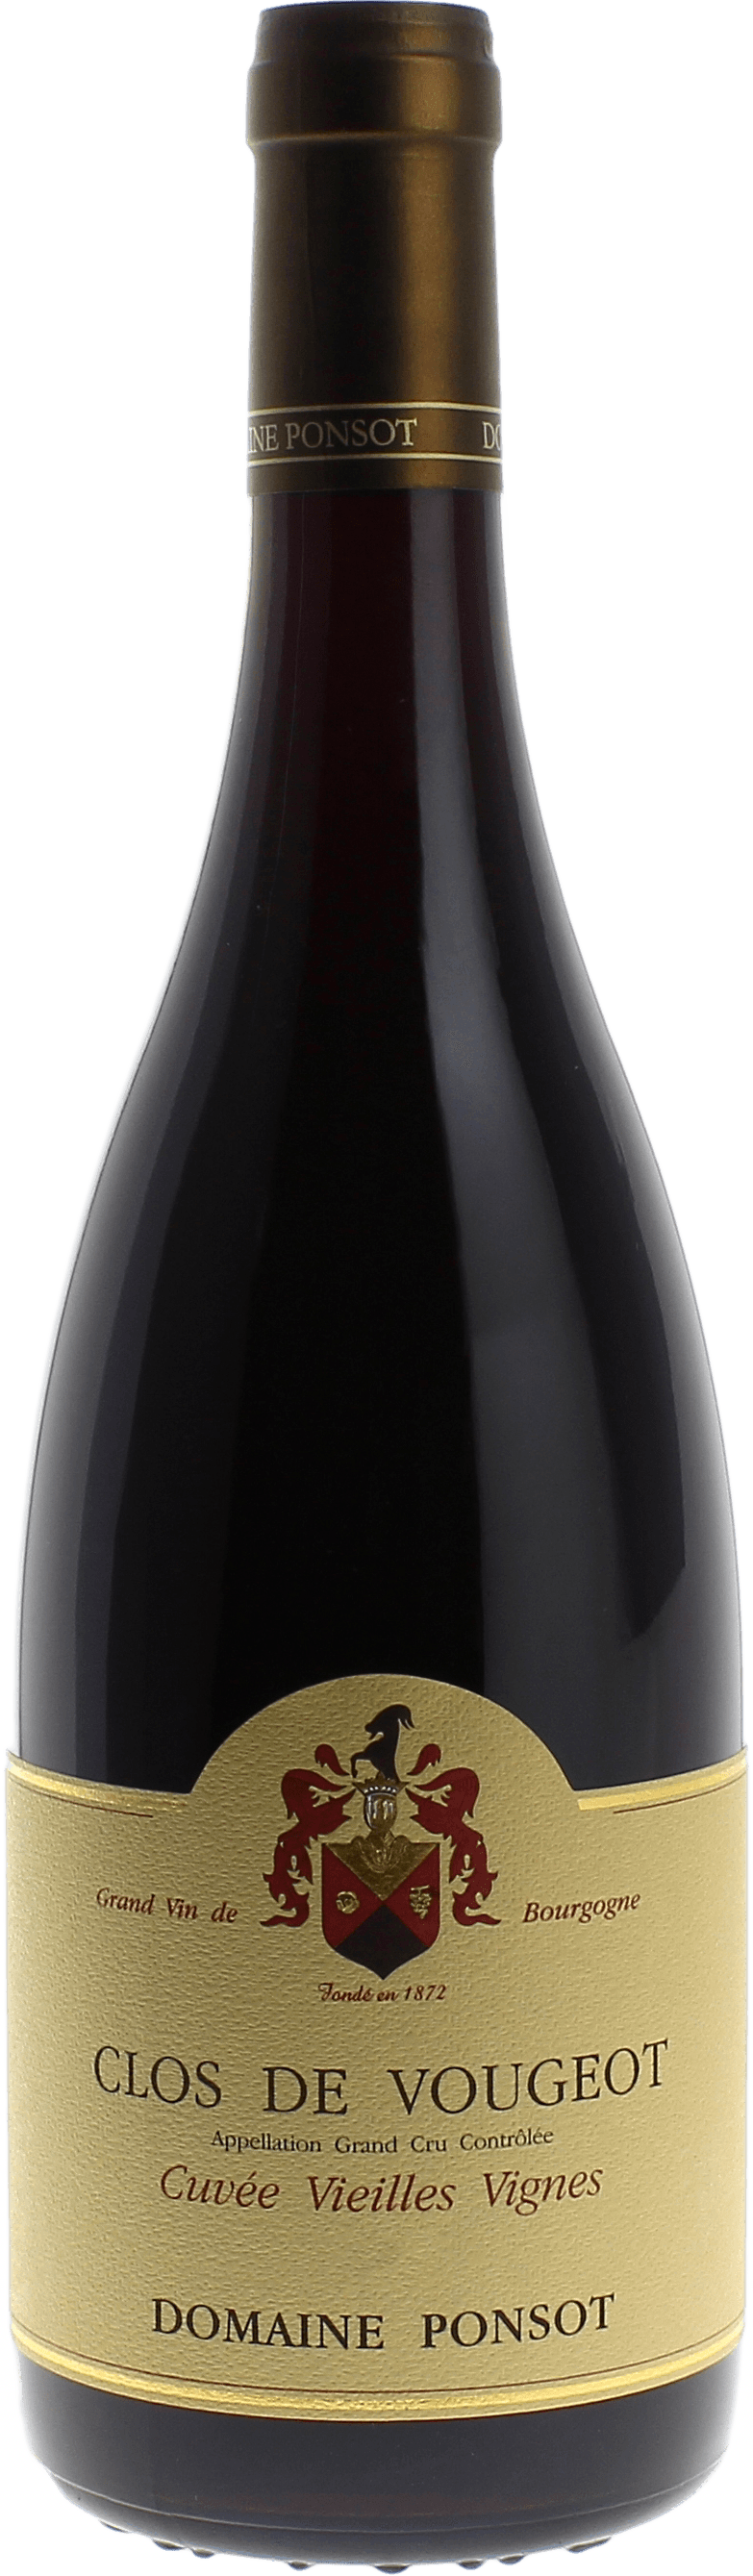 Clos de vougeot grand cru cuve vieilles vignes 2009 Domaine PONSOT, Bourgogne rouge